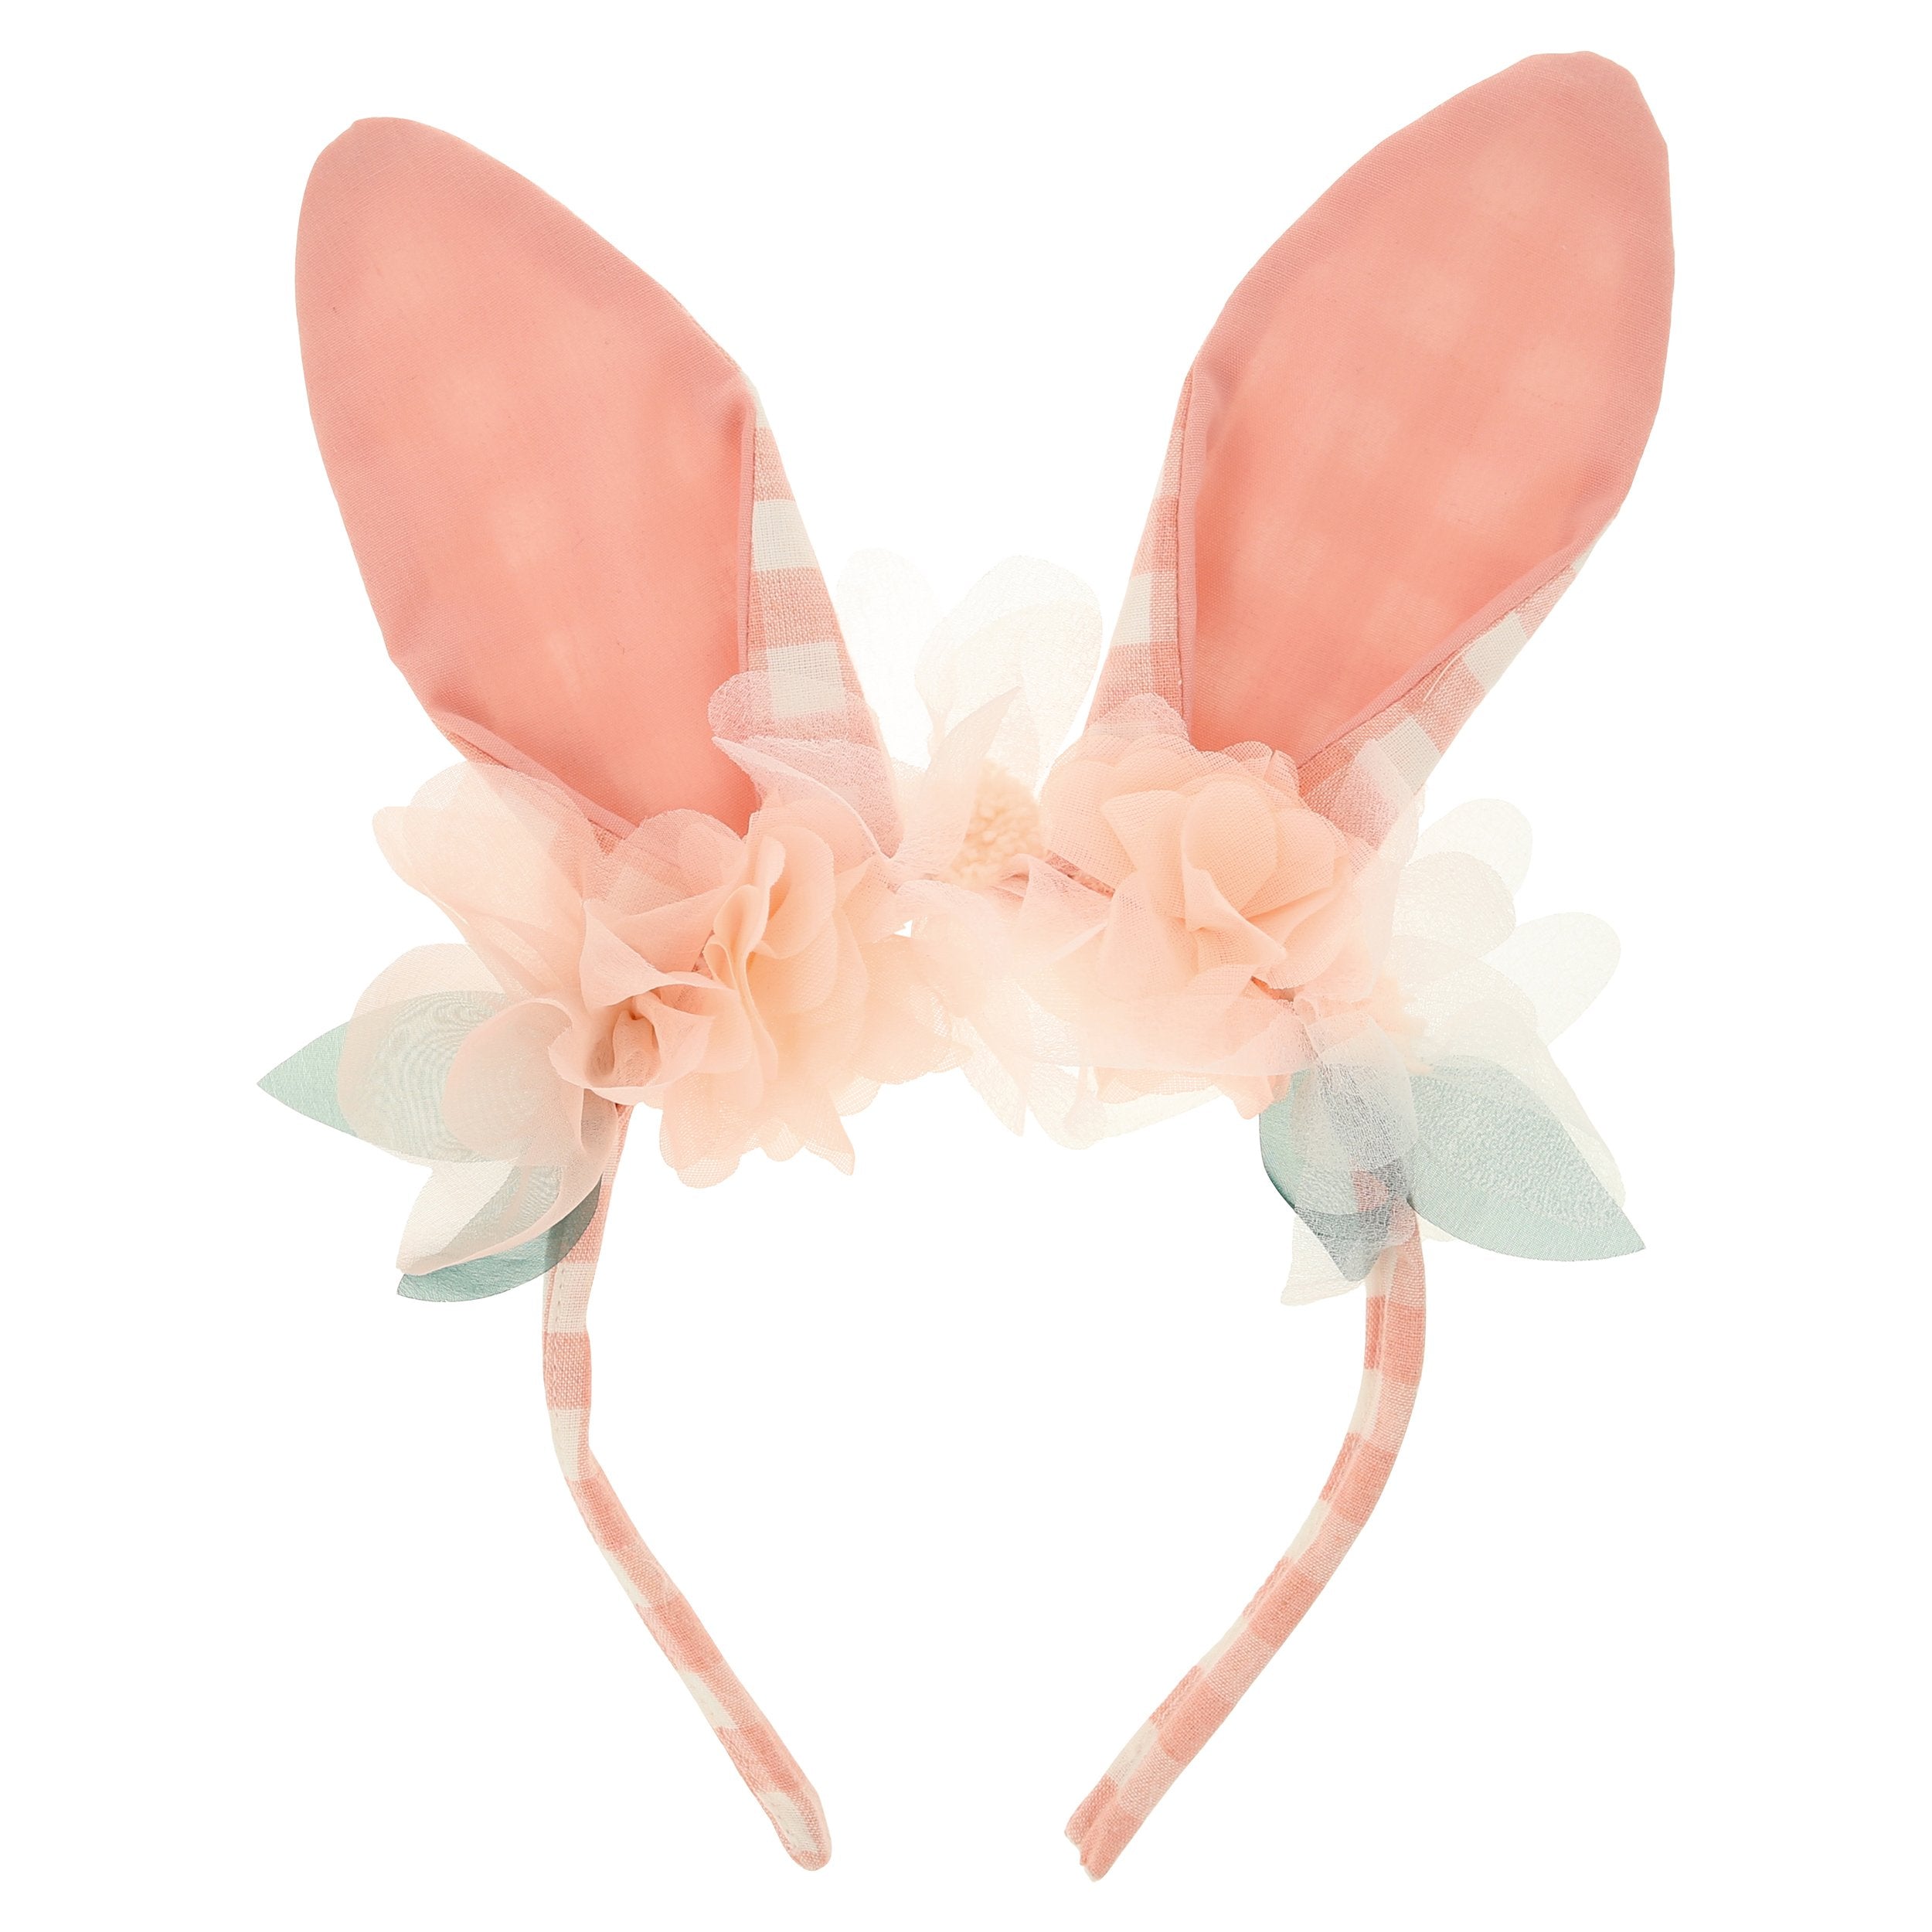 http://www.bonjourfete.com/cdn/shop/products/embellished-floral-bunny-headband-easter-spring-bonjour-fete_f64068d3-8ff0-44bf-9e41-7458c9d7c9a9.jpg?v=1646388880